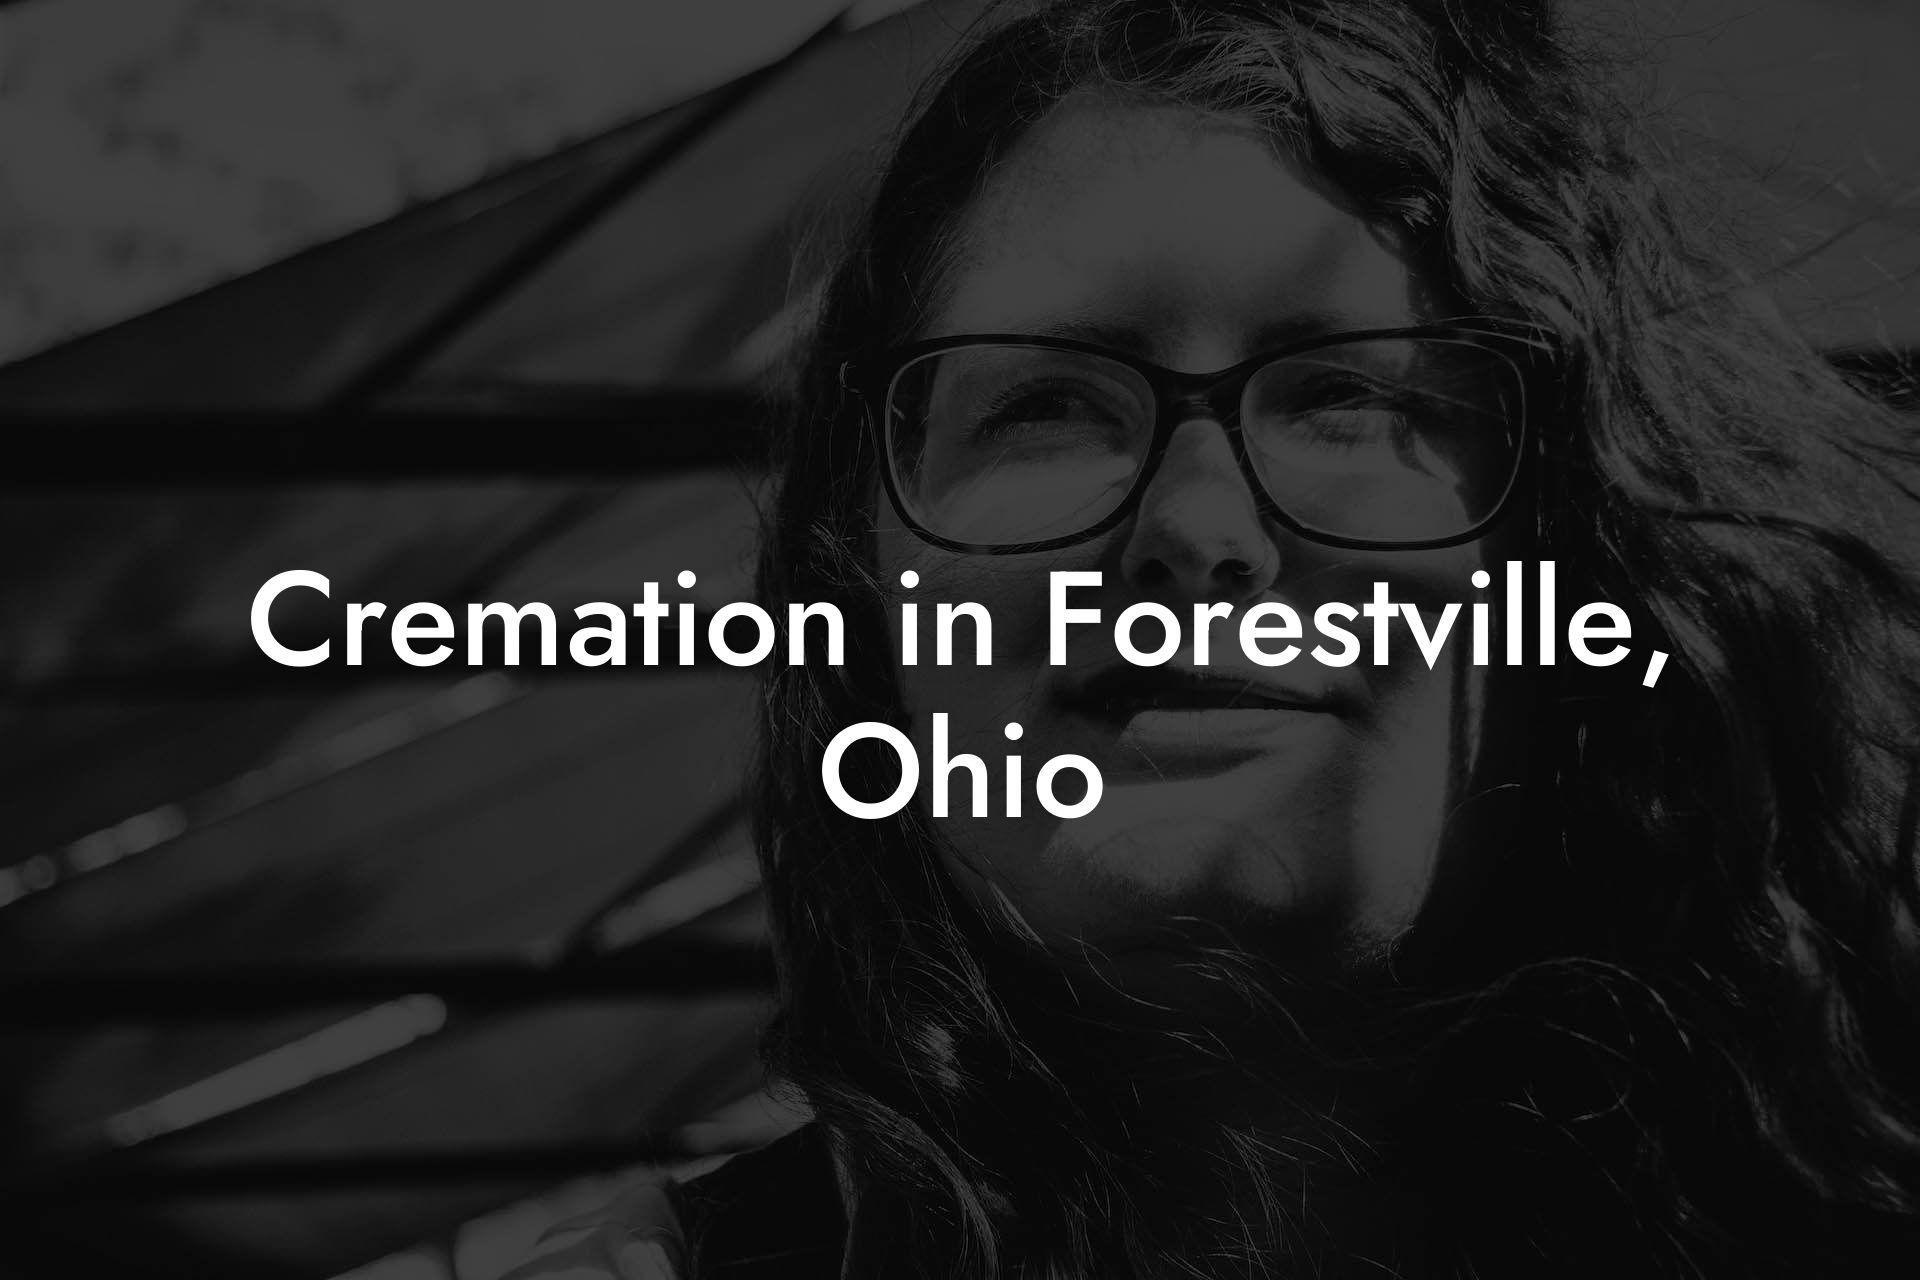 Cremation in Forestville, Ohio